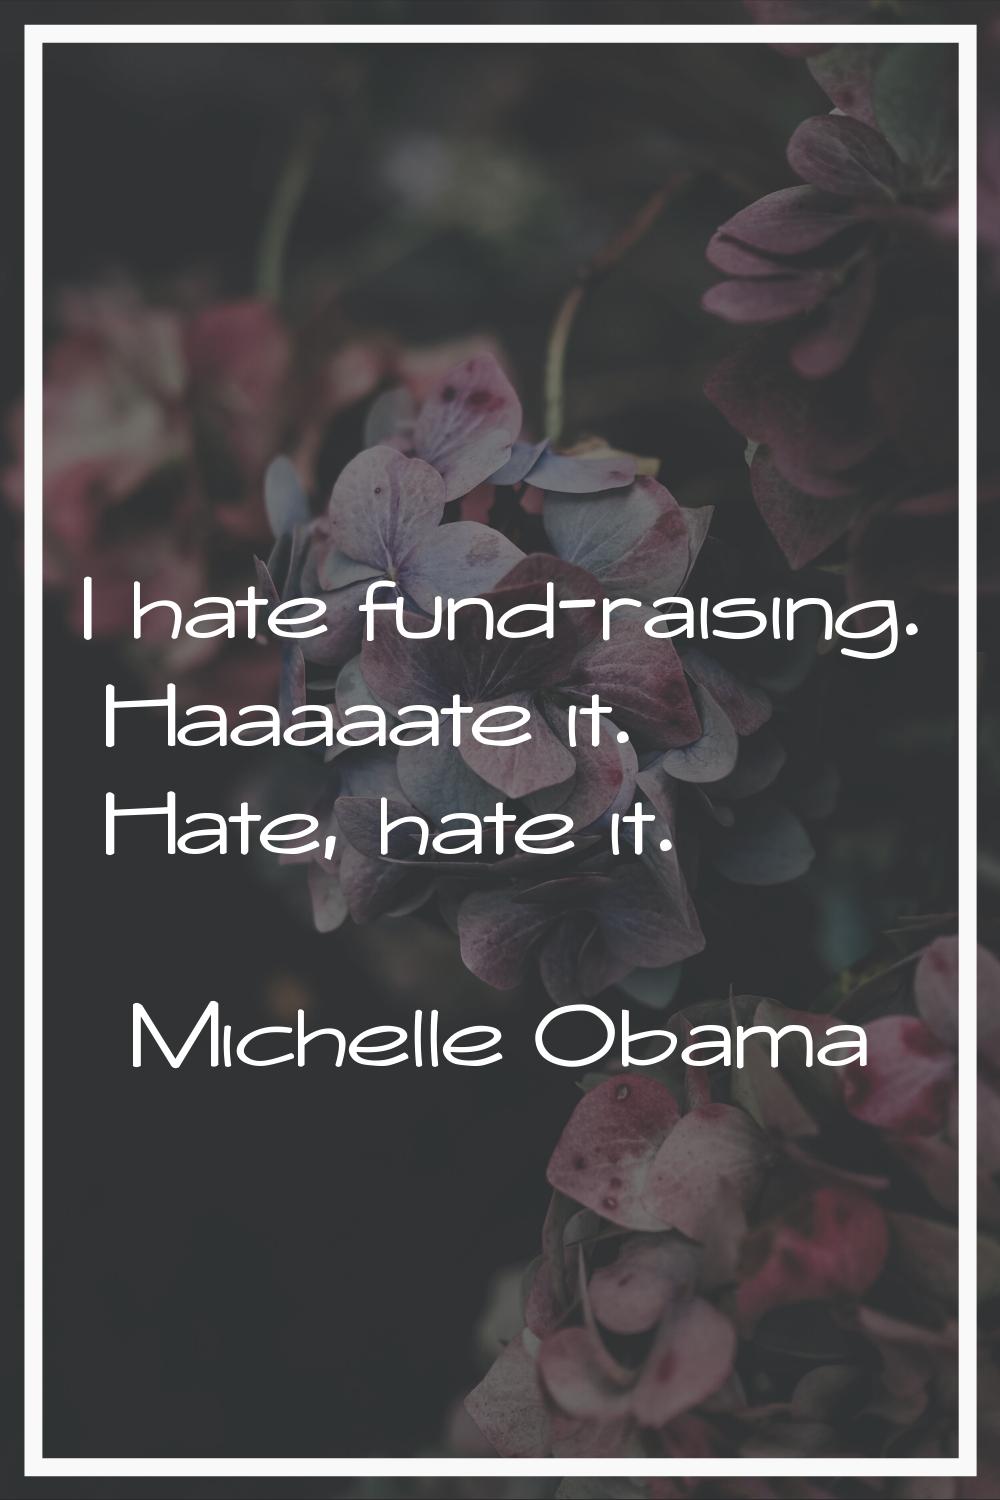 I hate fund-raising. Haaaaate it. Hate, hate it.